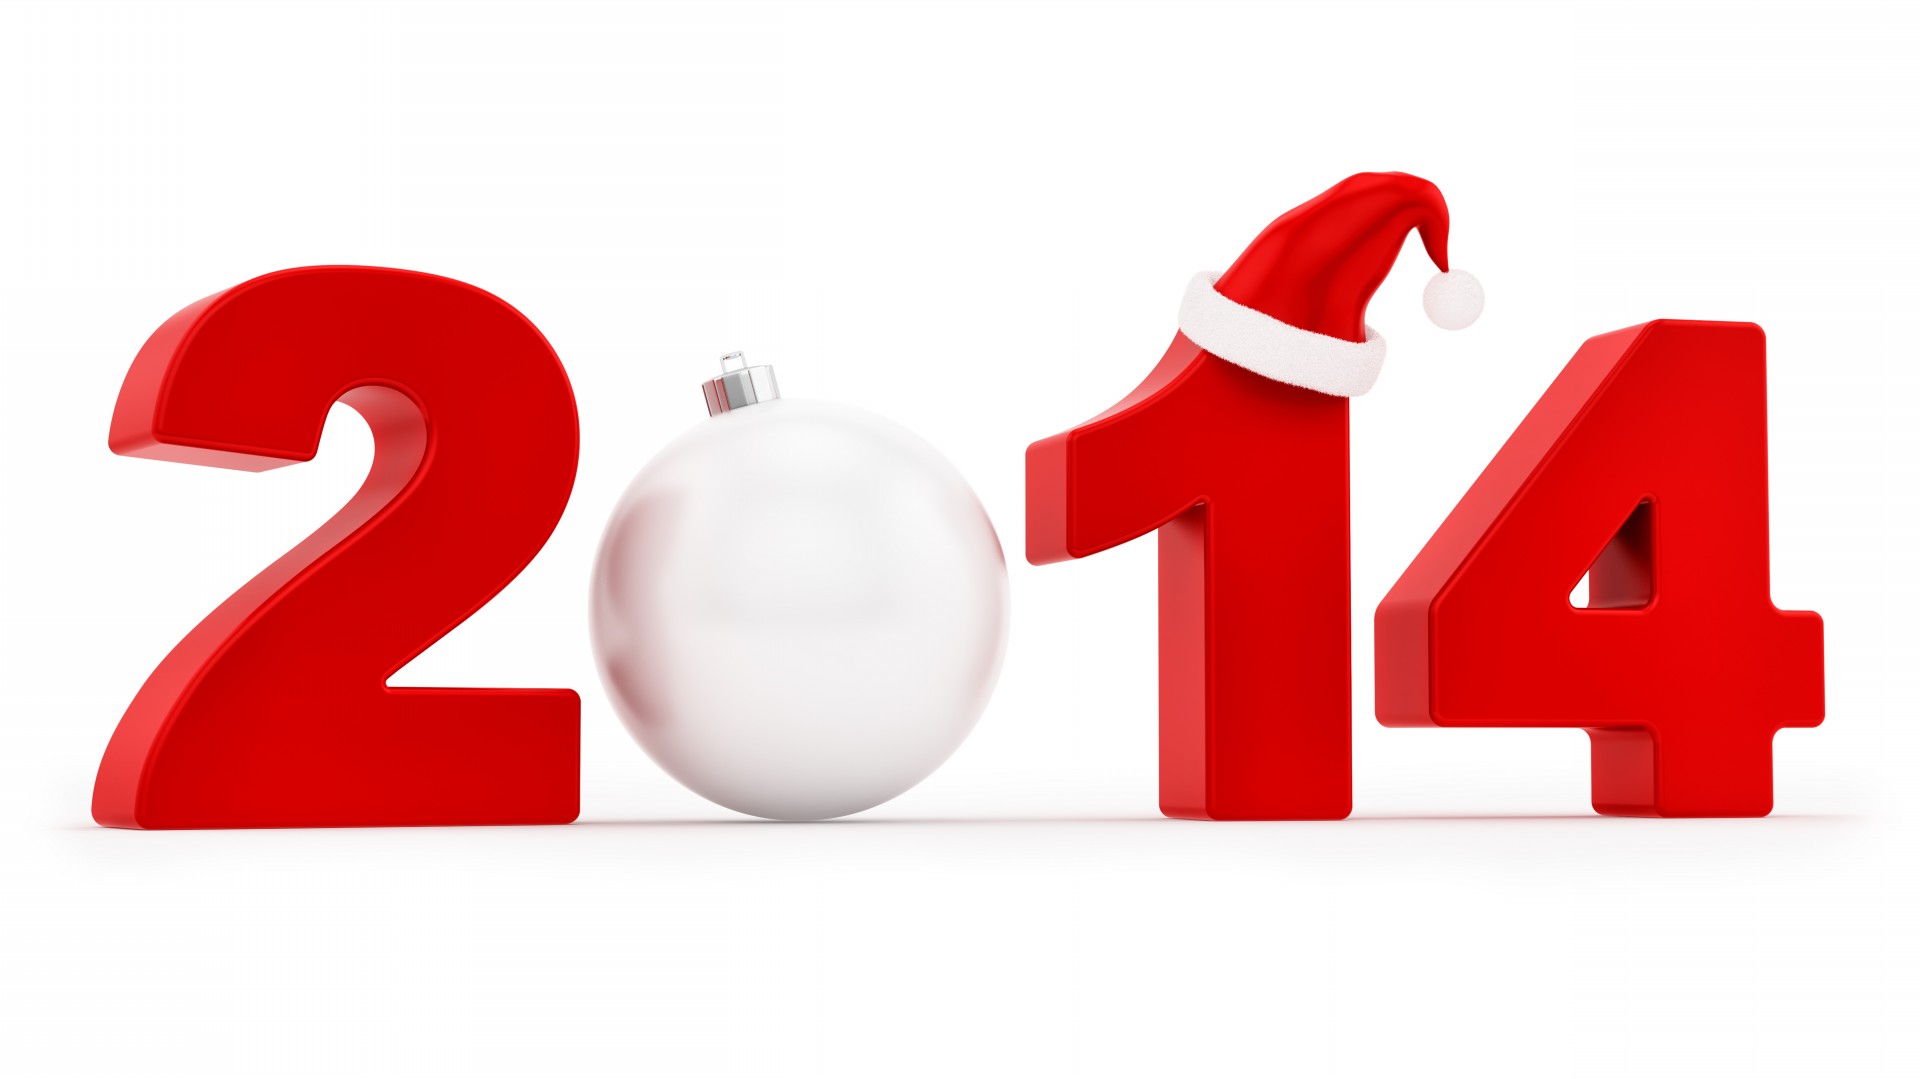 أجمل صور وبطاقات التهنئة بالعام الجديد 2014 خلفيات رأس السنة الجديدة 8